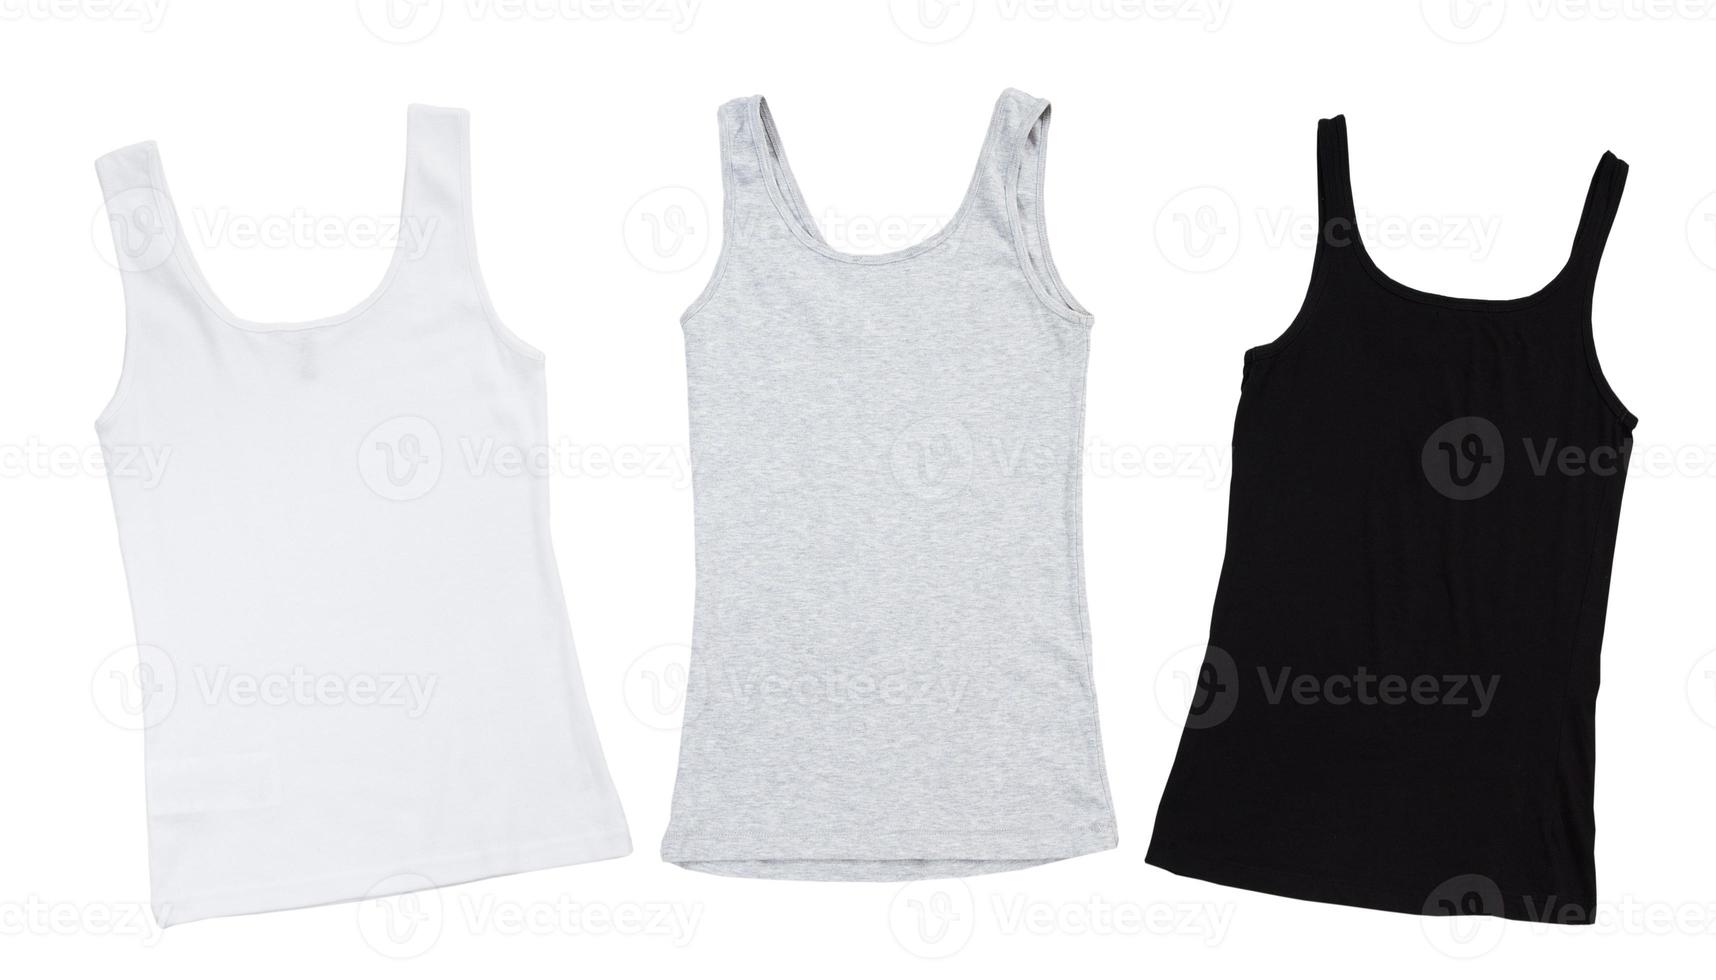 ärmlös t-shirt uppsättning, vit, grå och svart ärmlös shirts falsk upp isolering på vit bakgrund foto